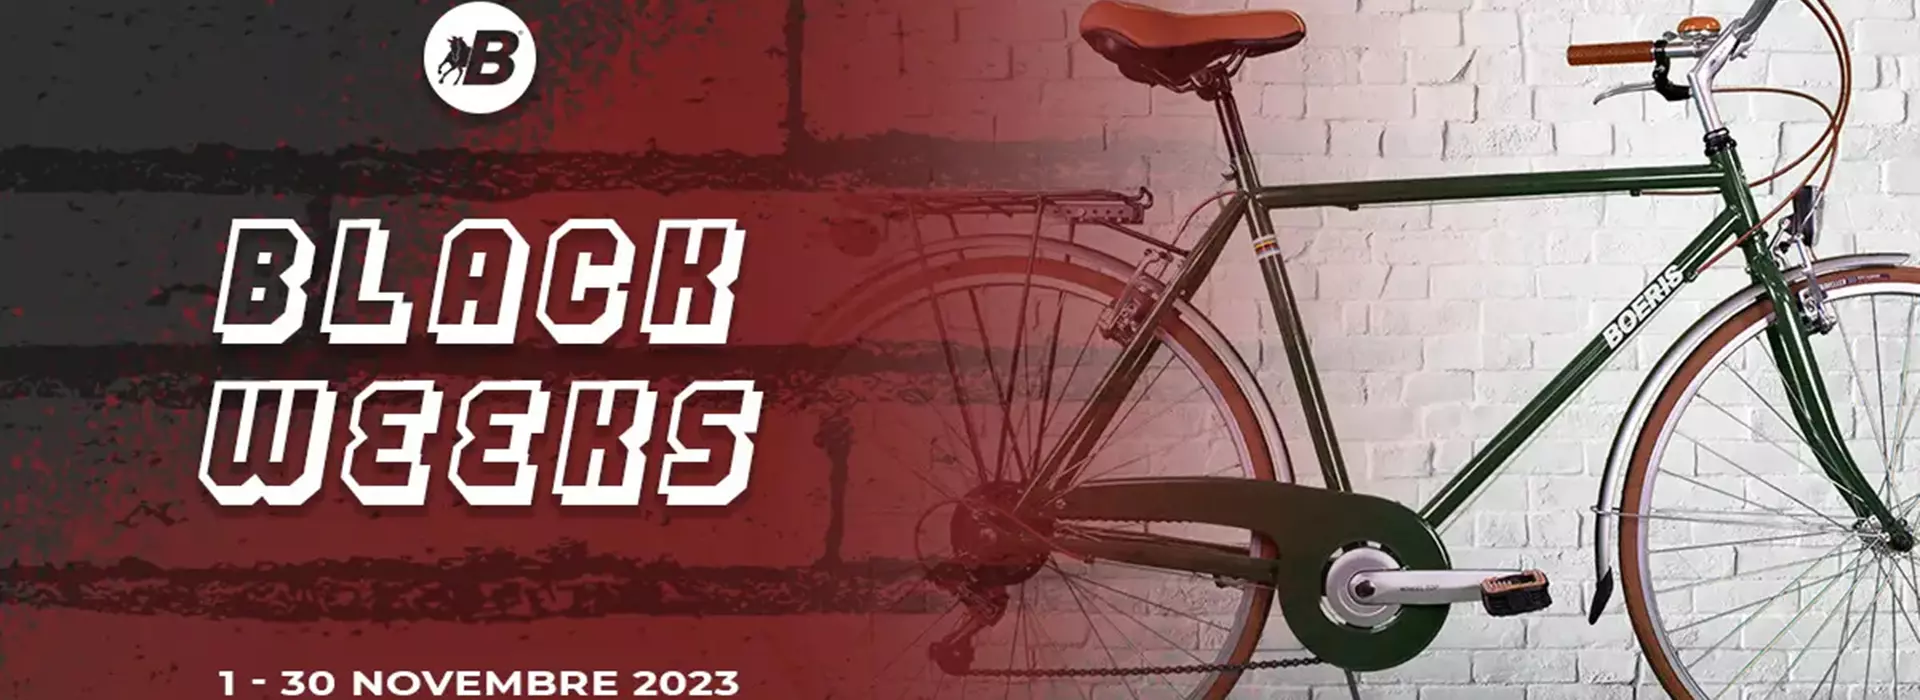 Copertina eventi Black Weeks Boeris Bikes torino dal 1 al 30 novembre 2023 con una city bike retrò verde Boeris Bikes Torino